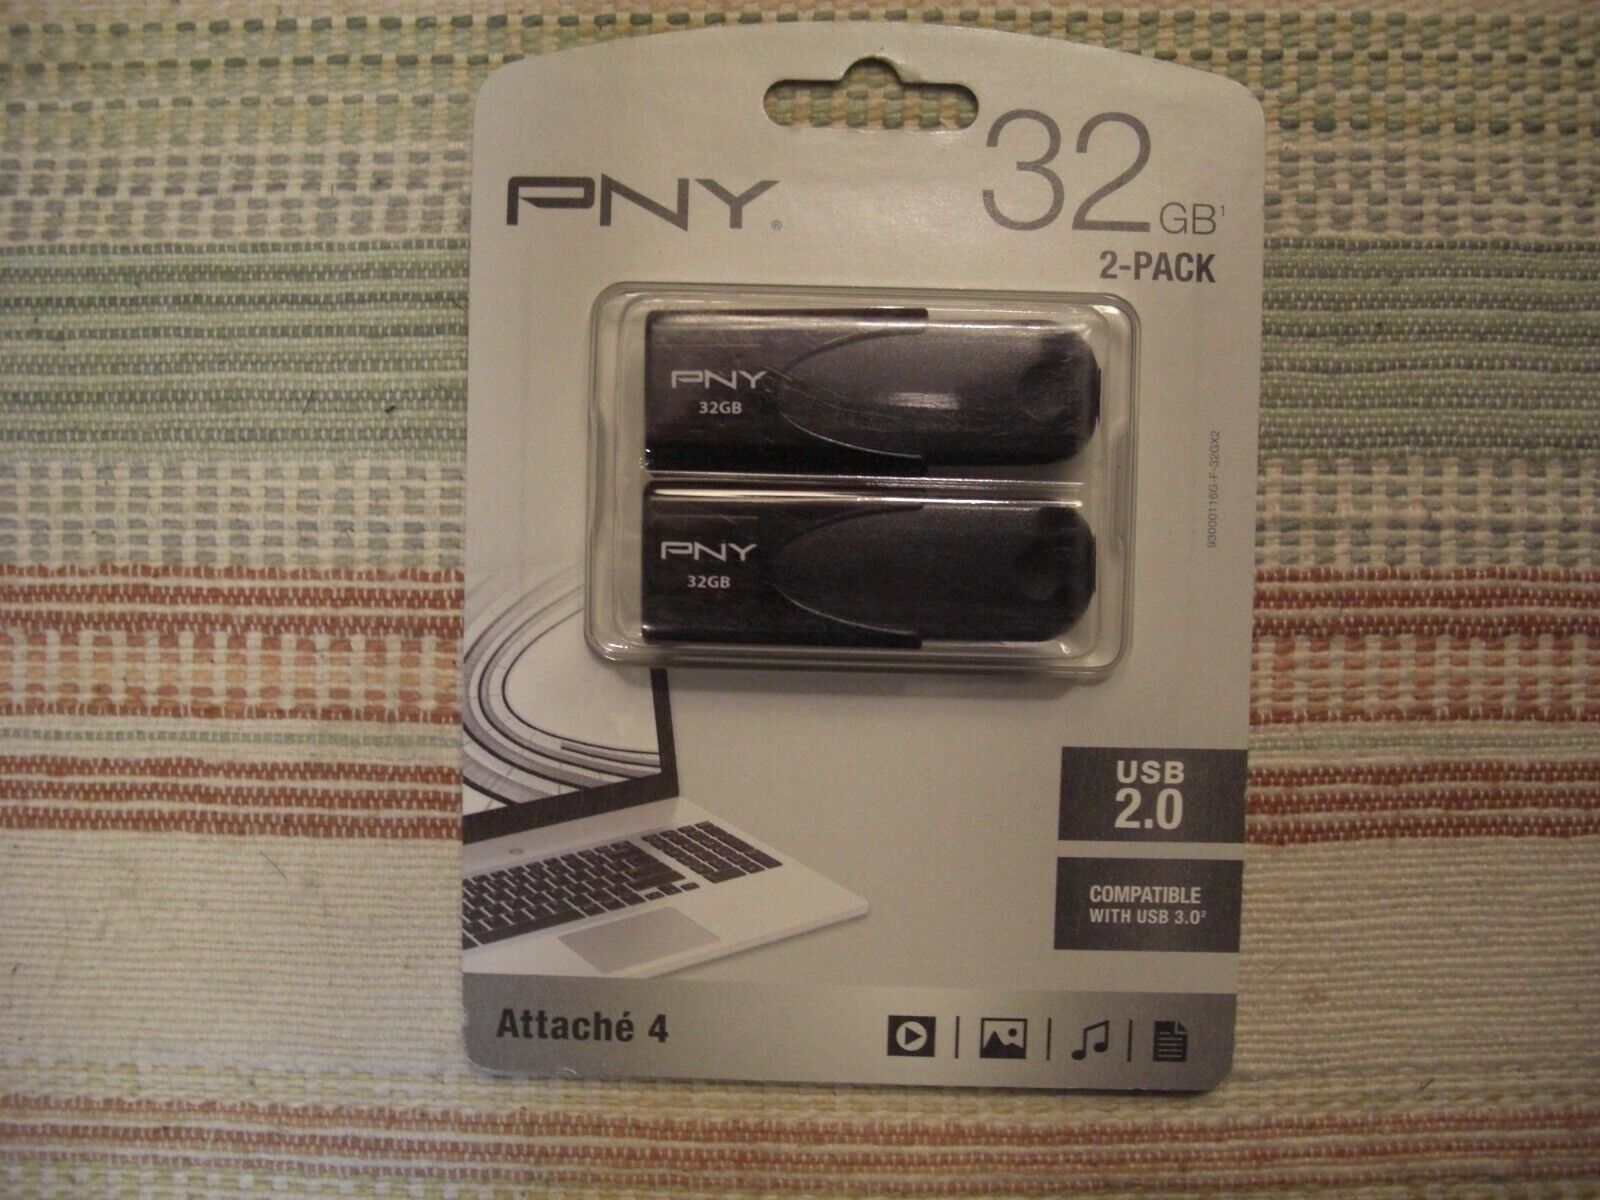 PNY 32GB Attache 4 USB 2.0 flash drive 2-pack (64GB total)